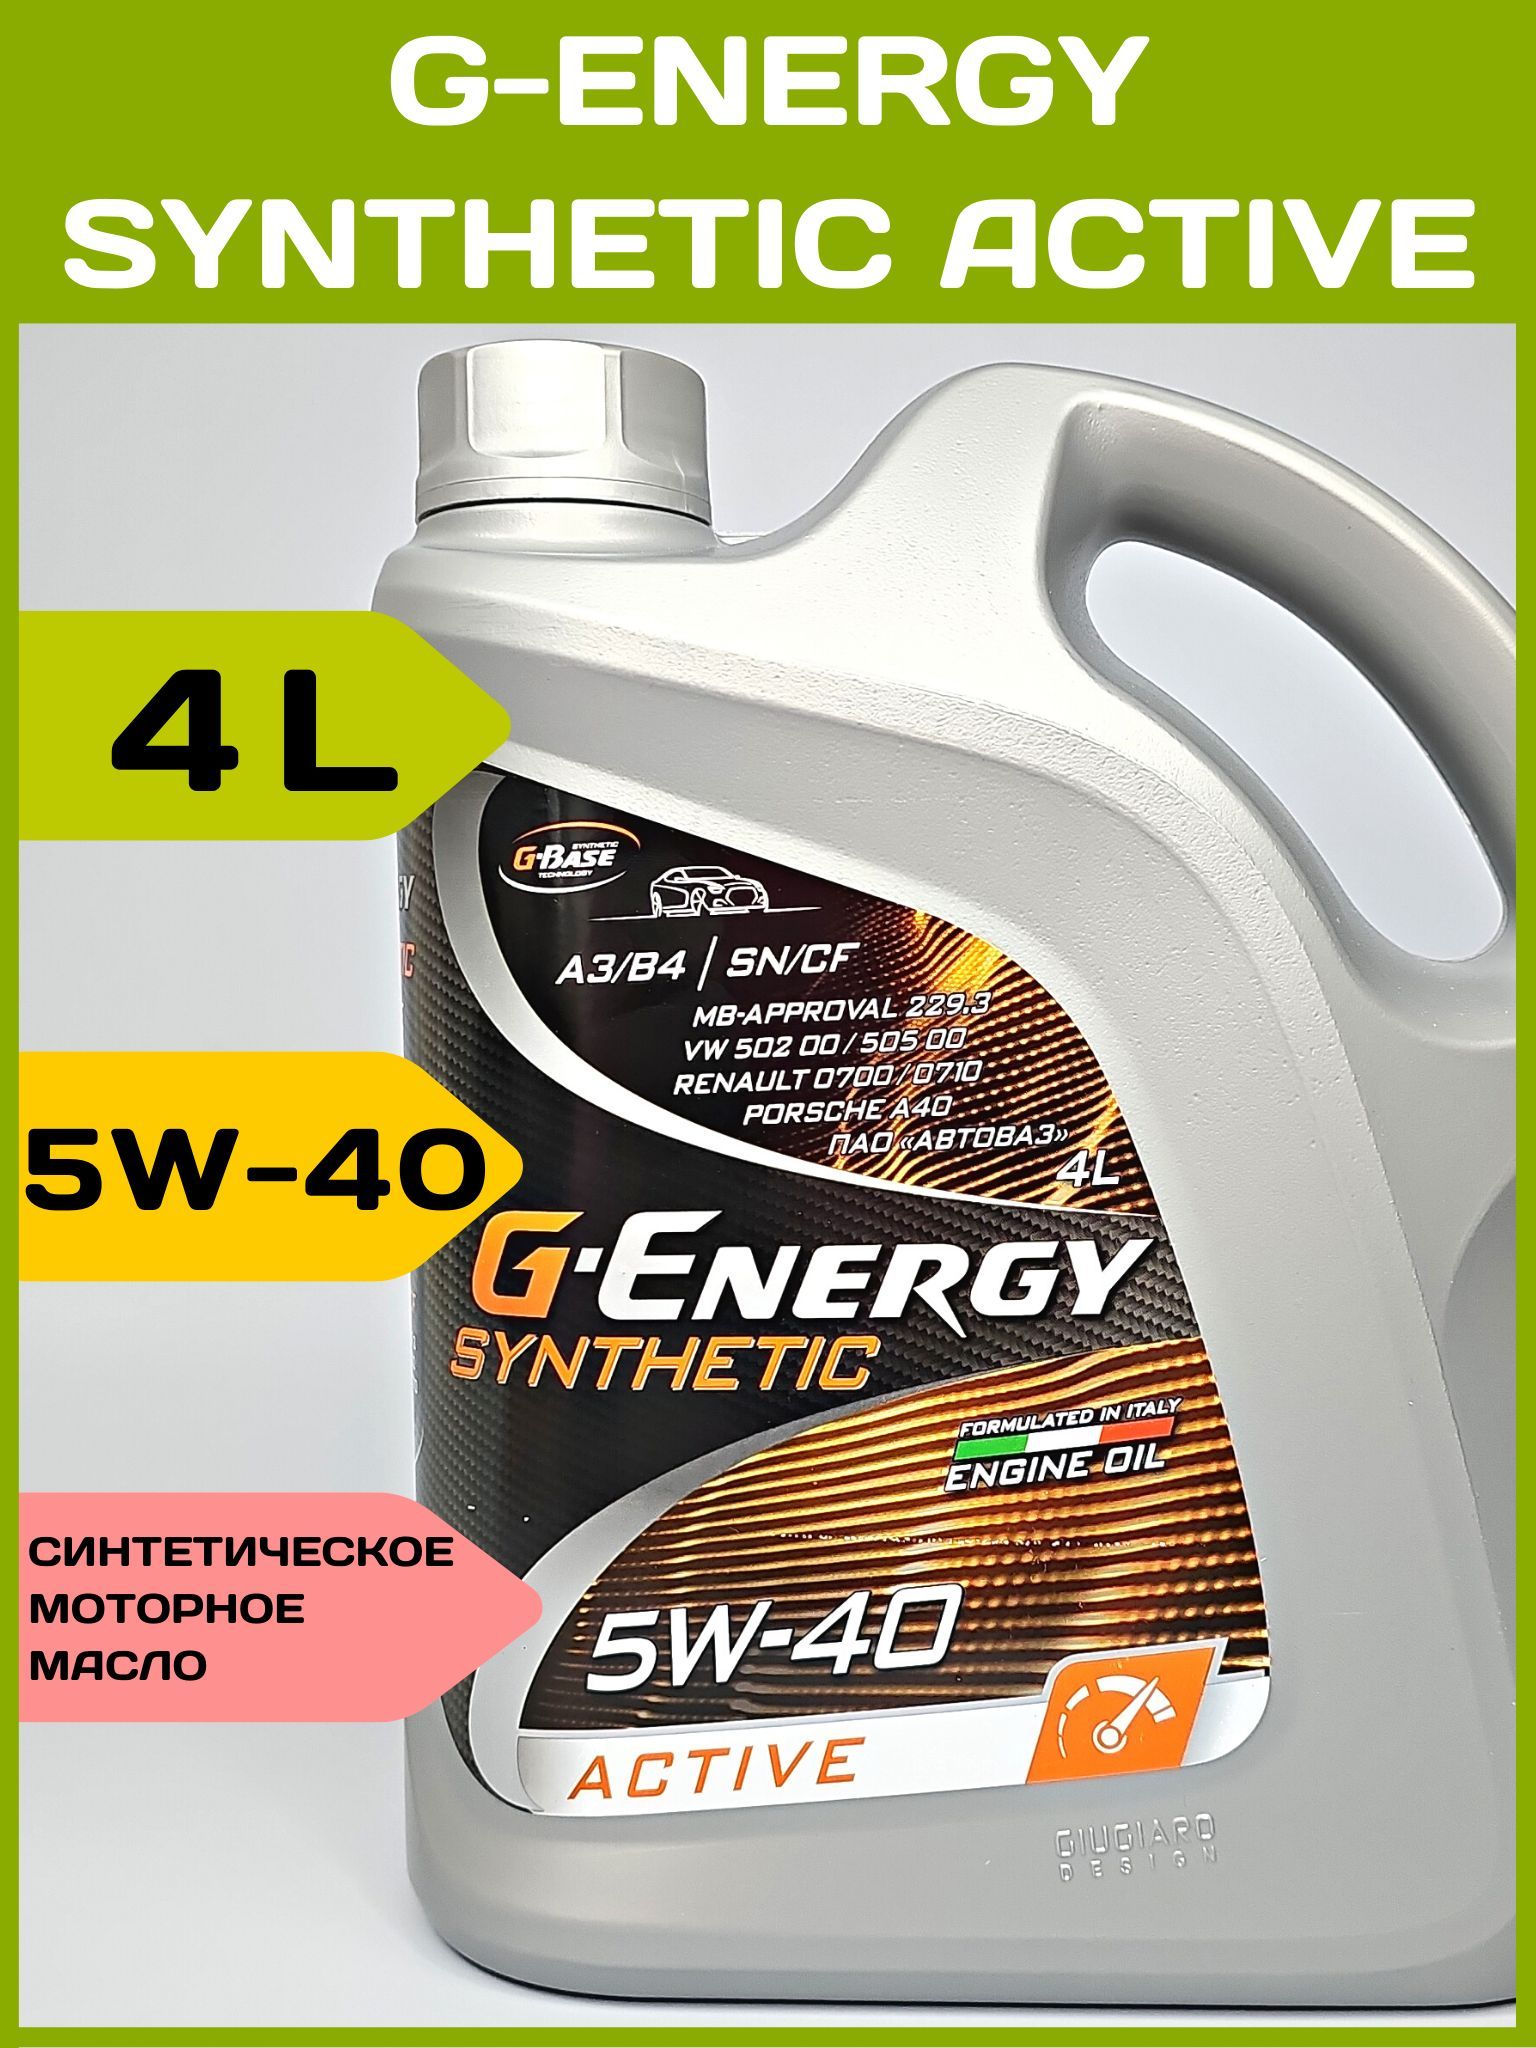 Масло g energy active 5w40. G Energy 5w40 Актив. G-Energy Synthetic Active 5w-40. Масло g Energy 5w40 синтетика. G-Energy Synthetic Active 5w-30.